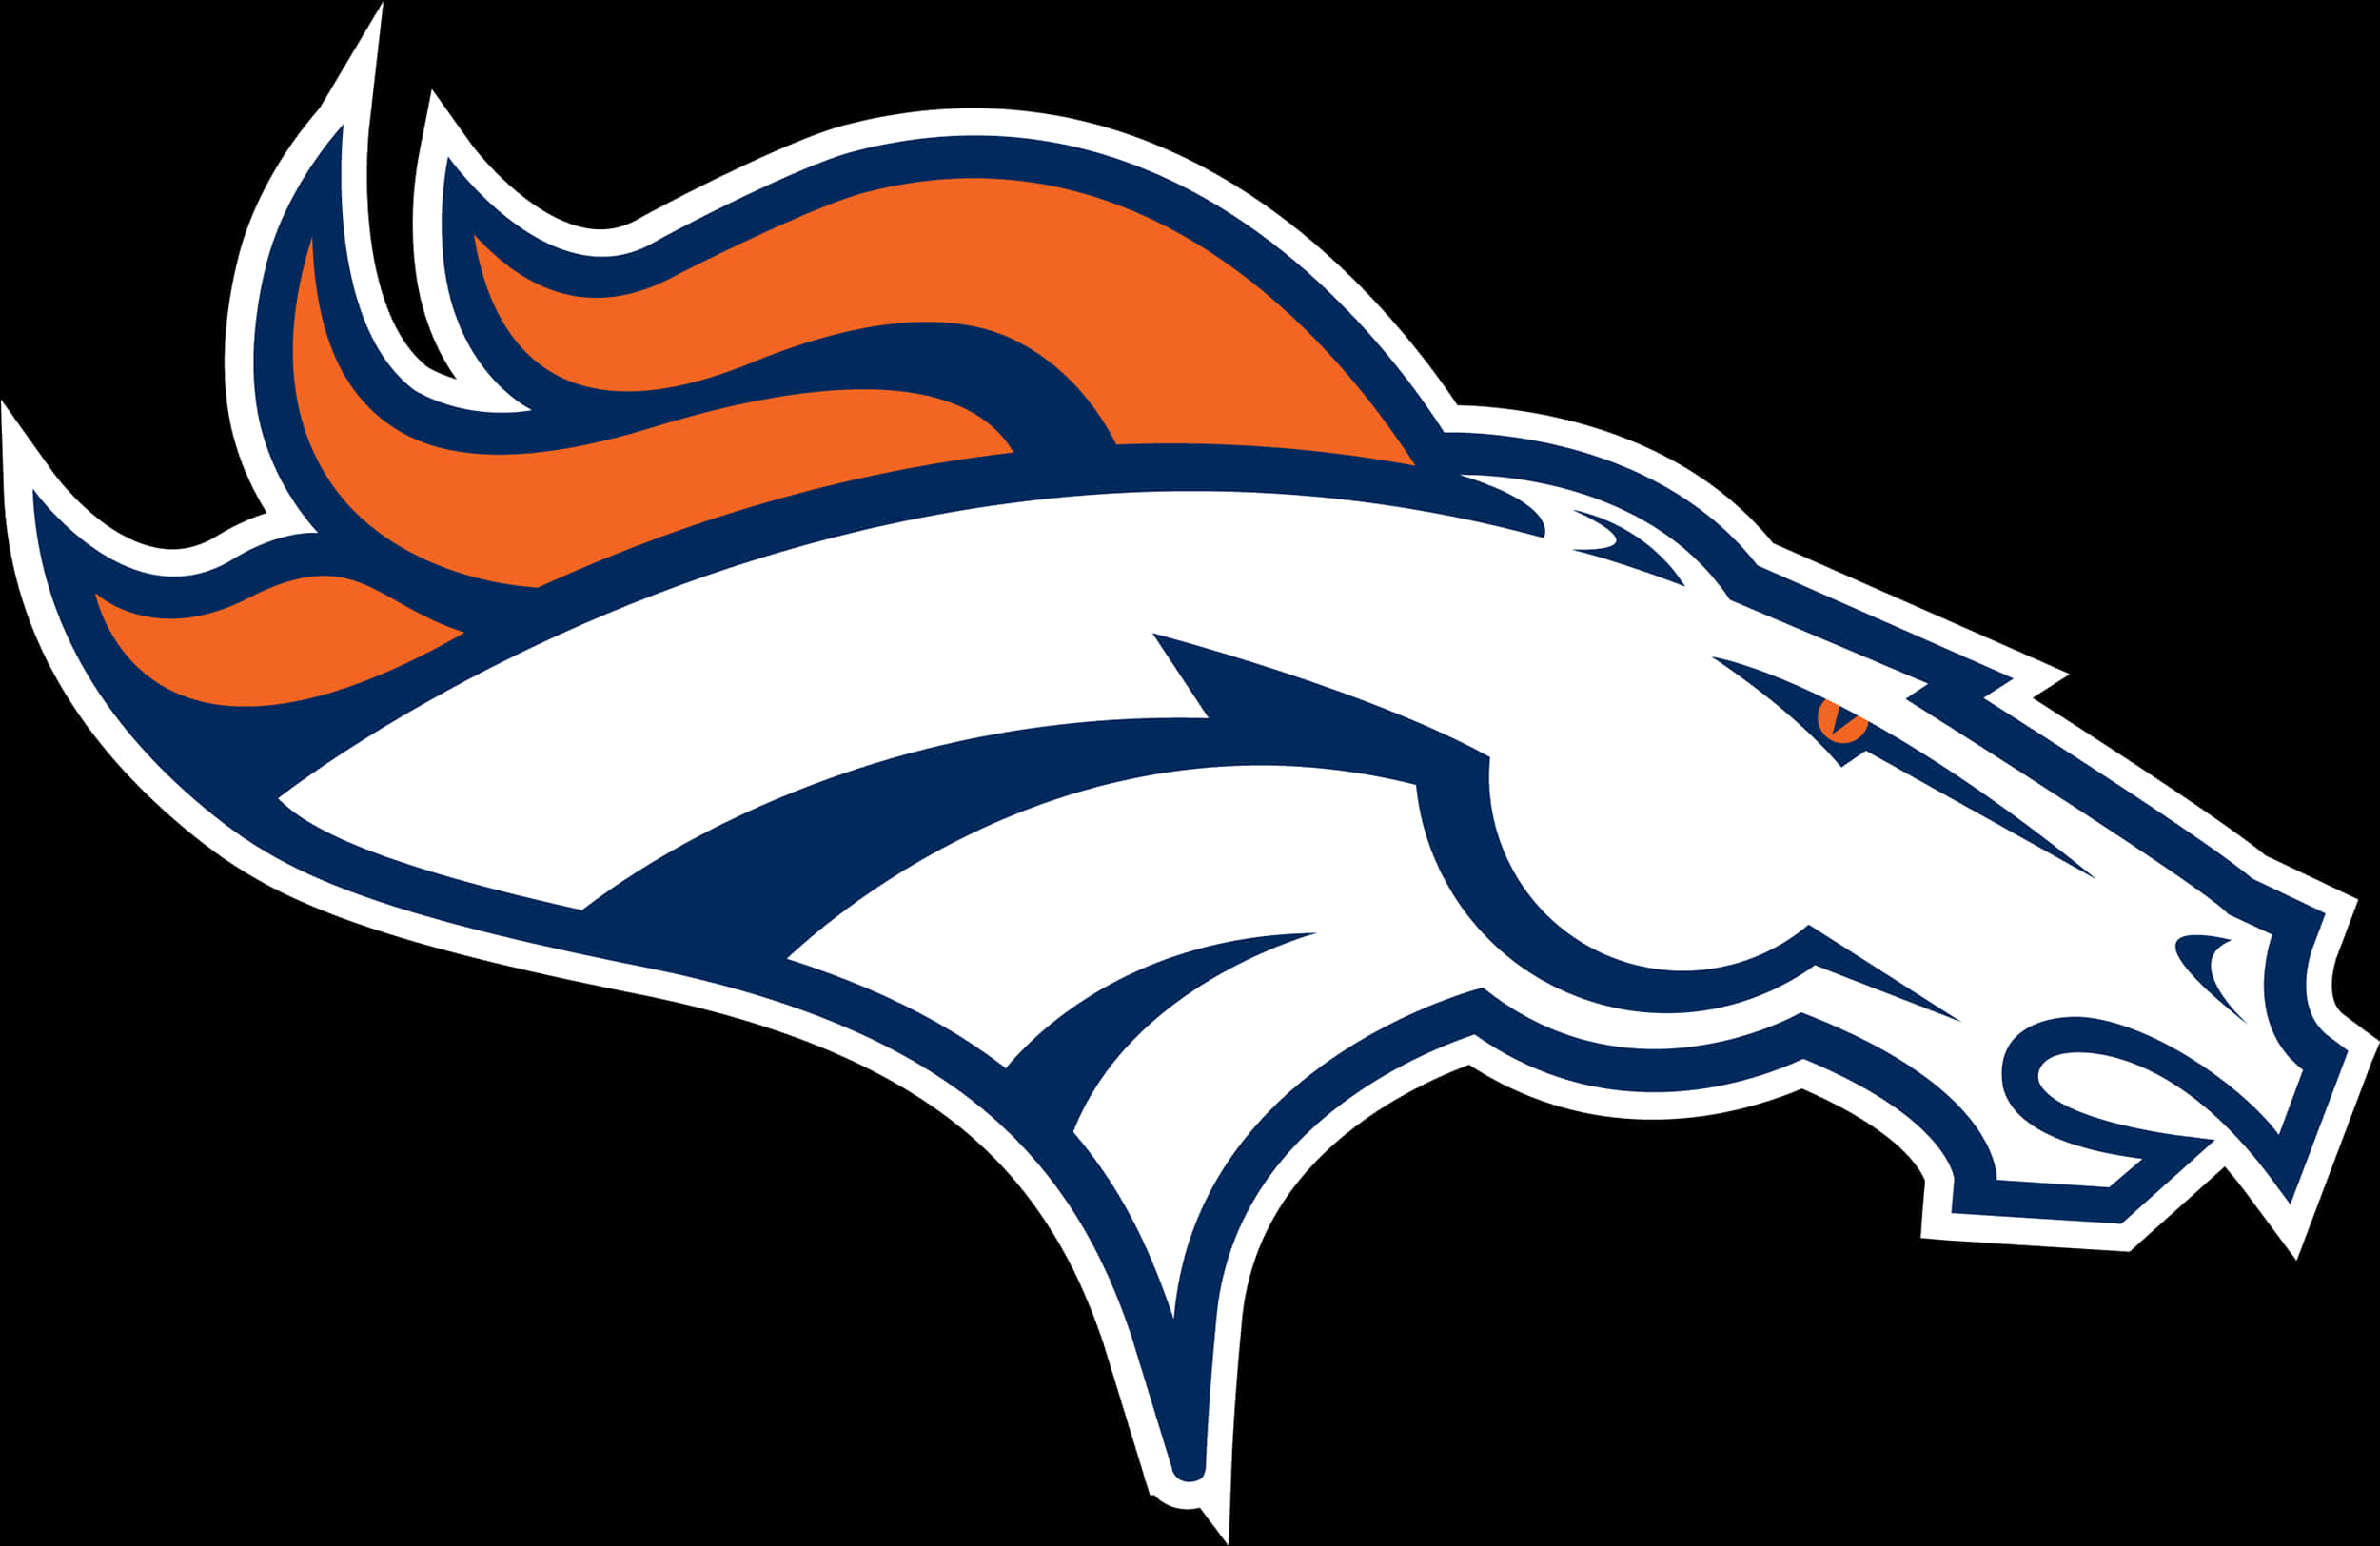 Download Broncos Team Logo | Wallpapers.com